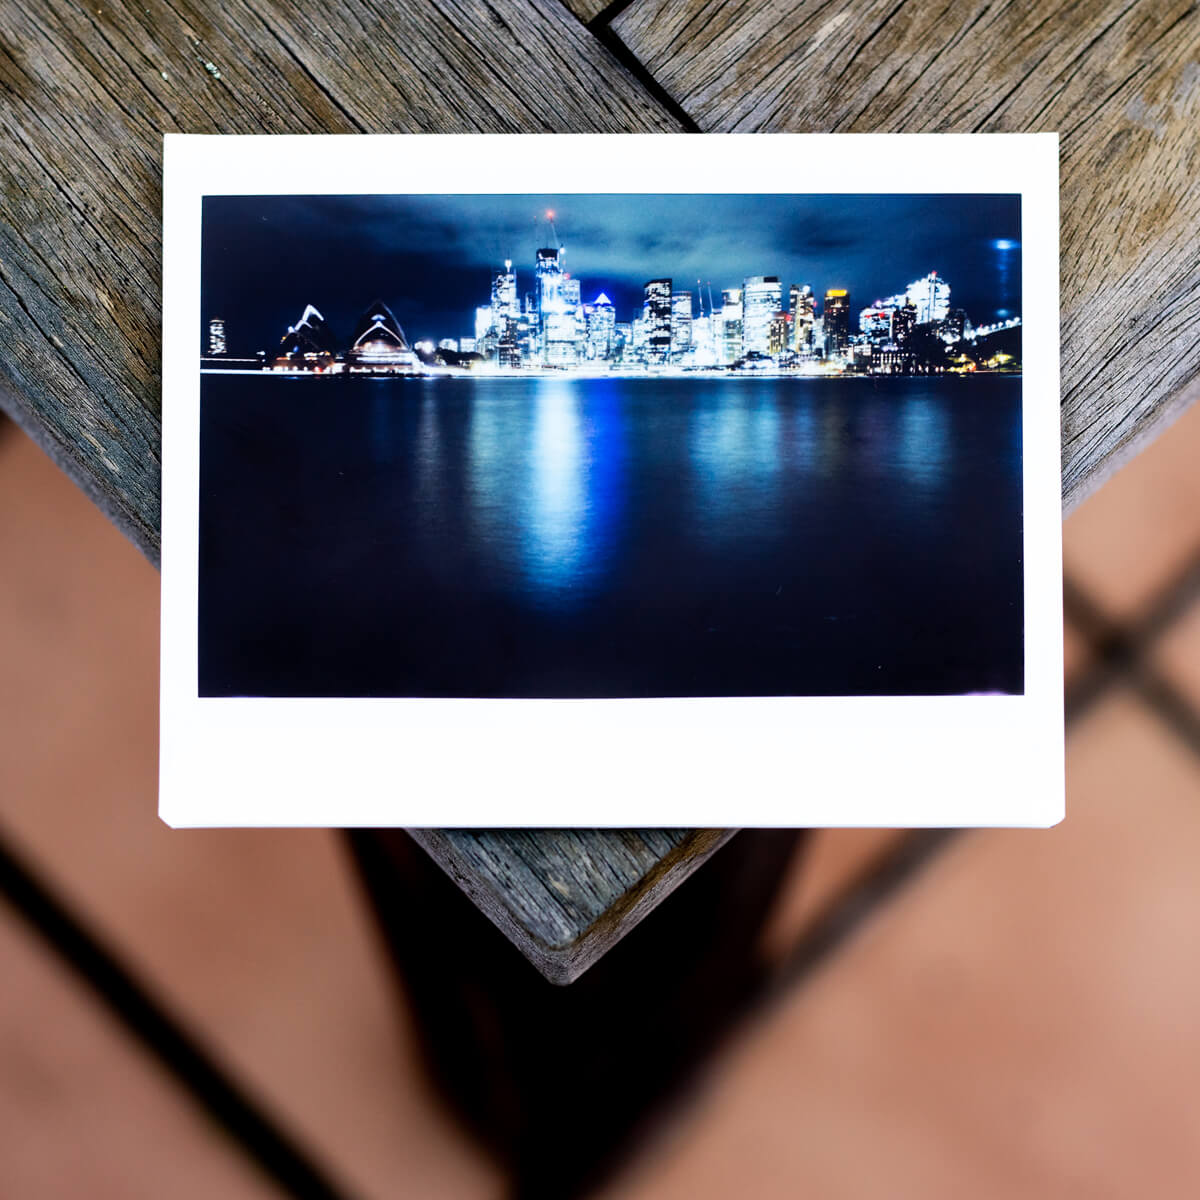 MiNT Instakon RF70 + Fujifilm Instax Wide - The Sydney Skyline